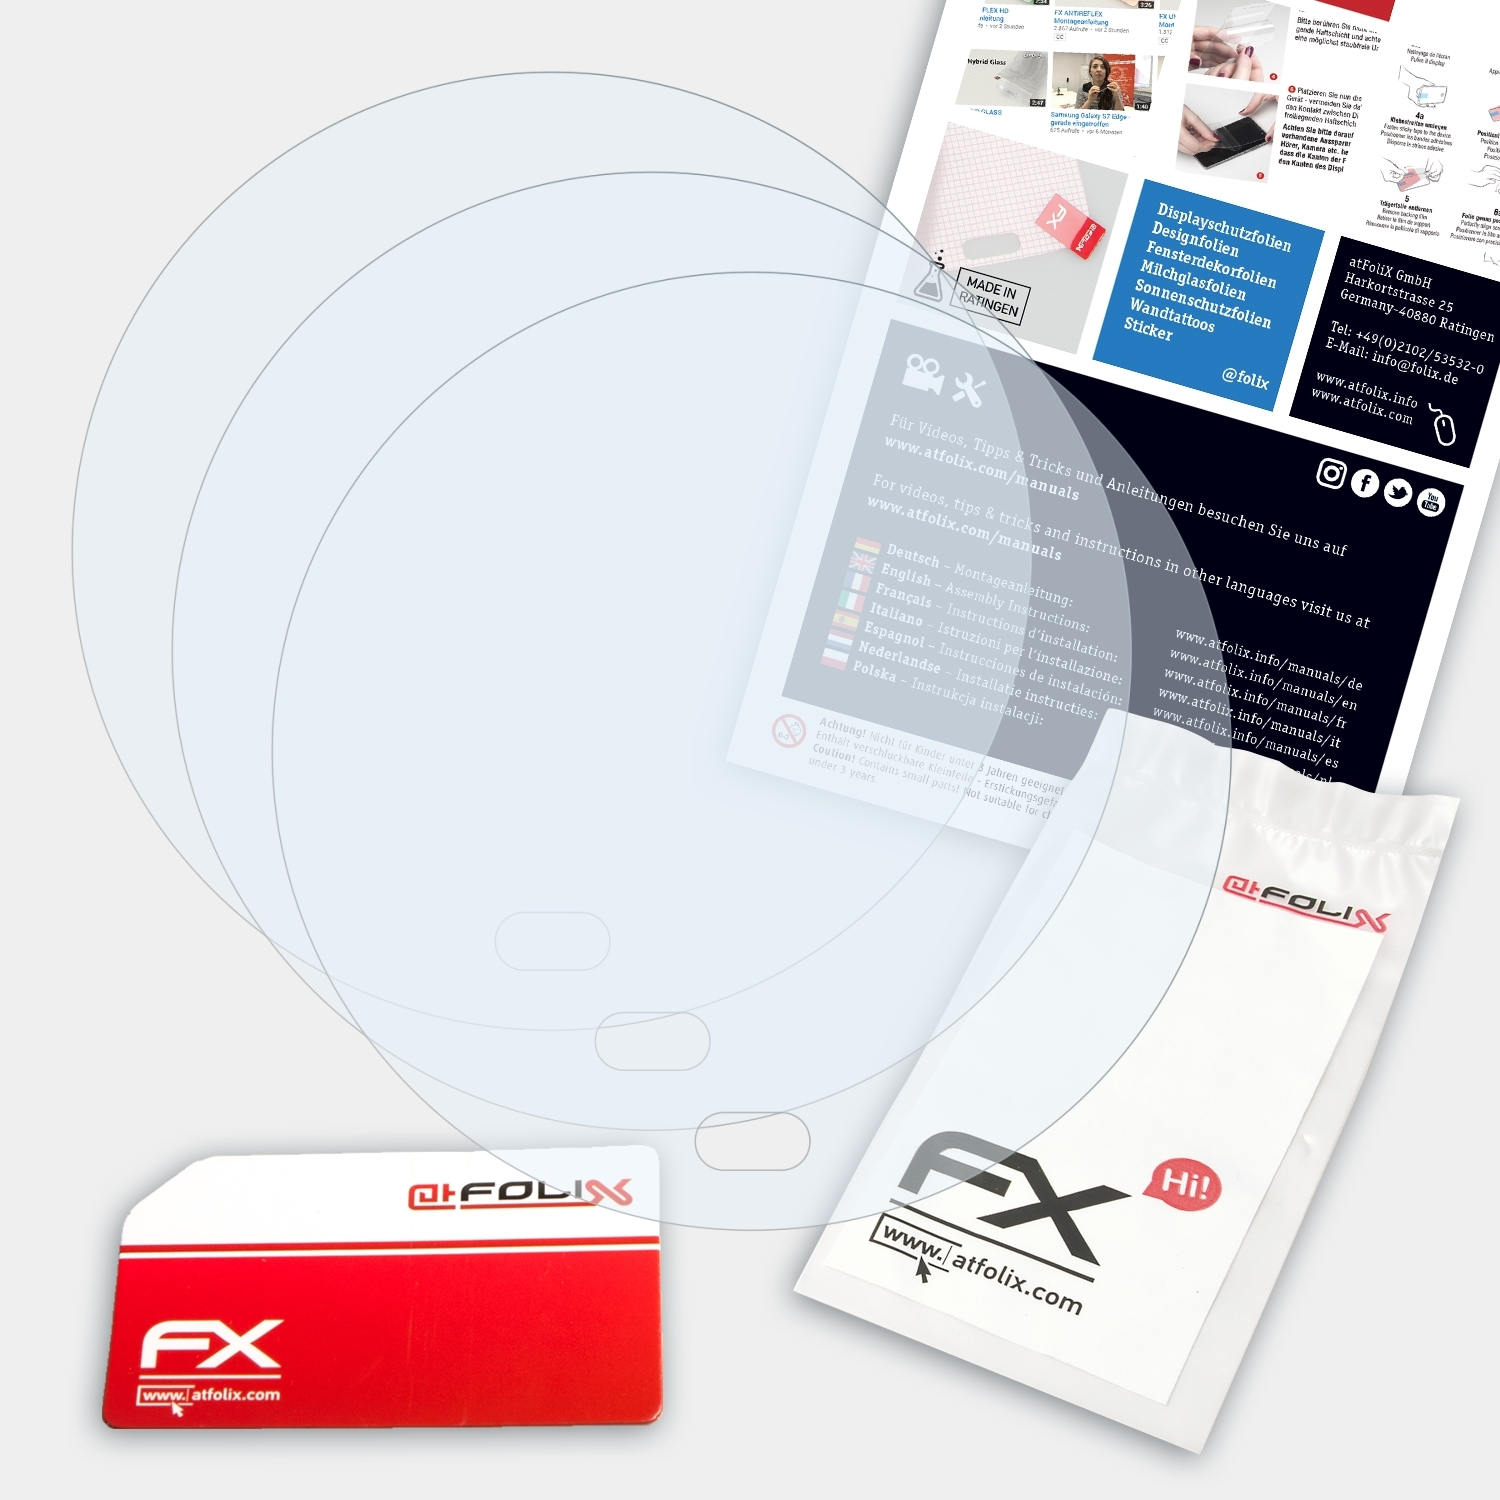 FX-Clear Honor ATFOLIX Lens) Magic3 Displayschutz(für Pro 3x